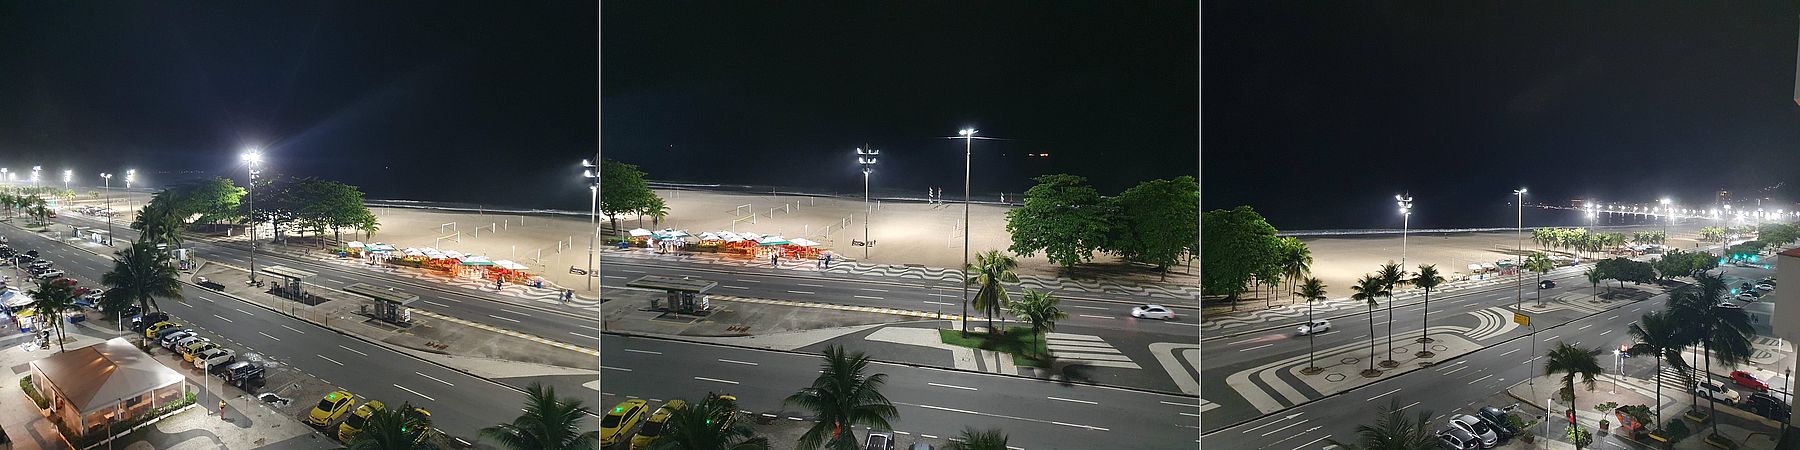 Copacabana bei Nacht aus dem Hotelzimmerfenster